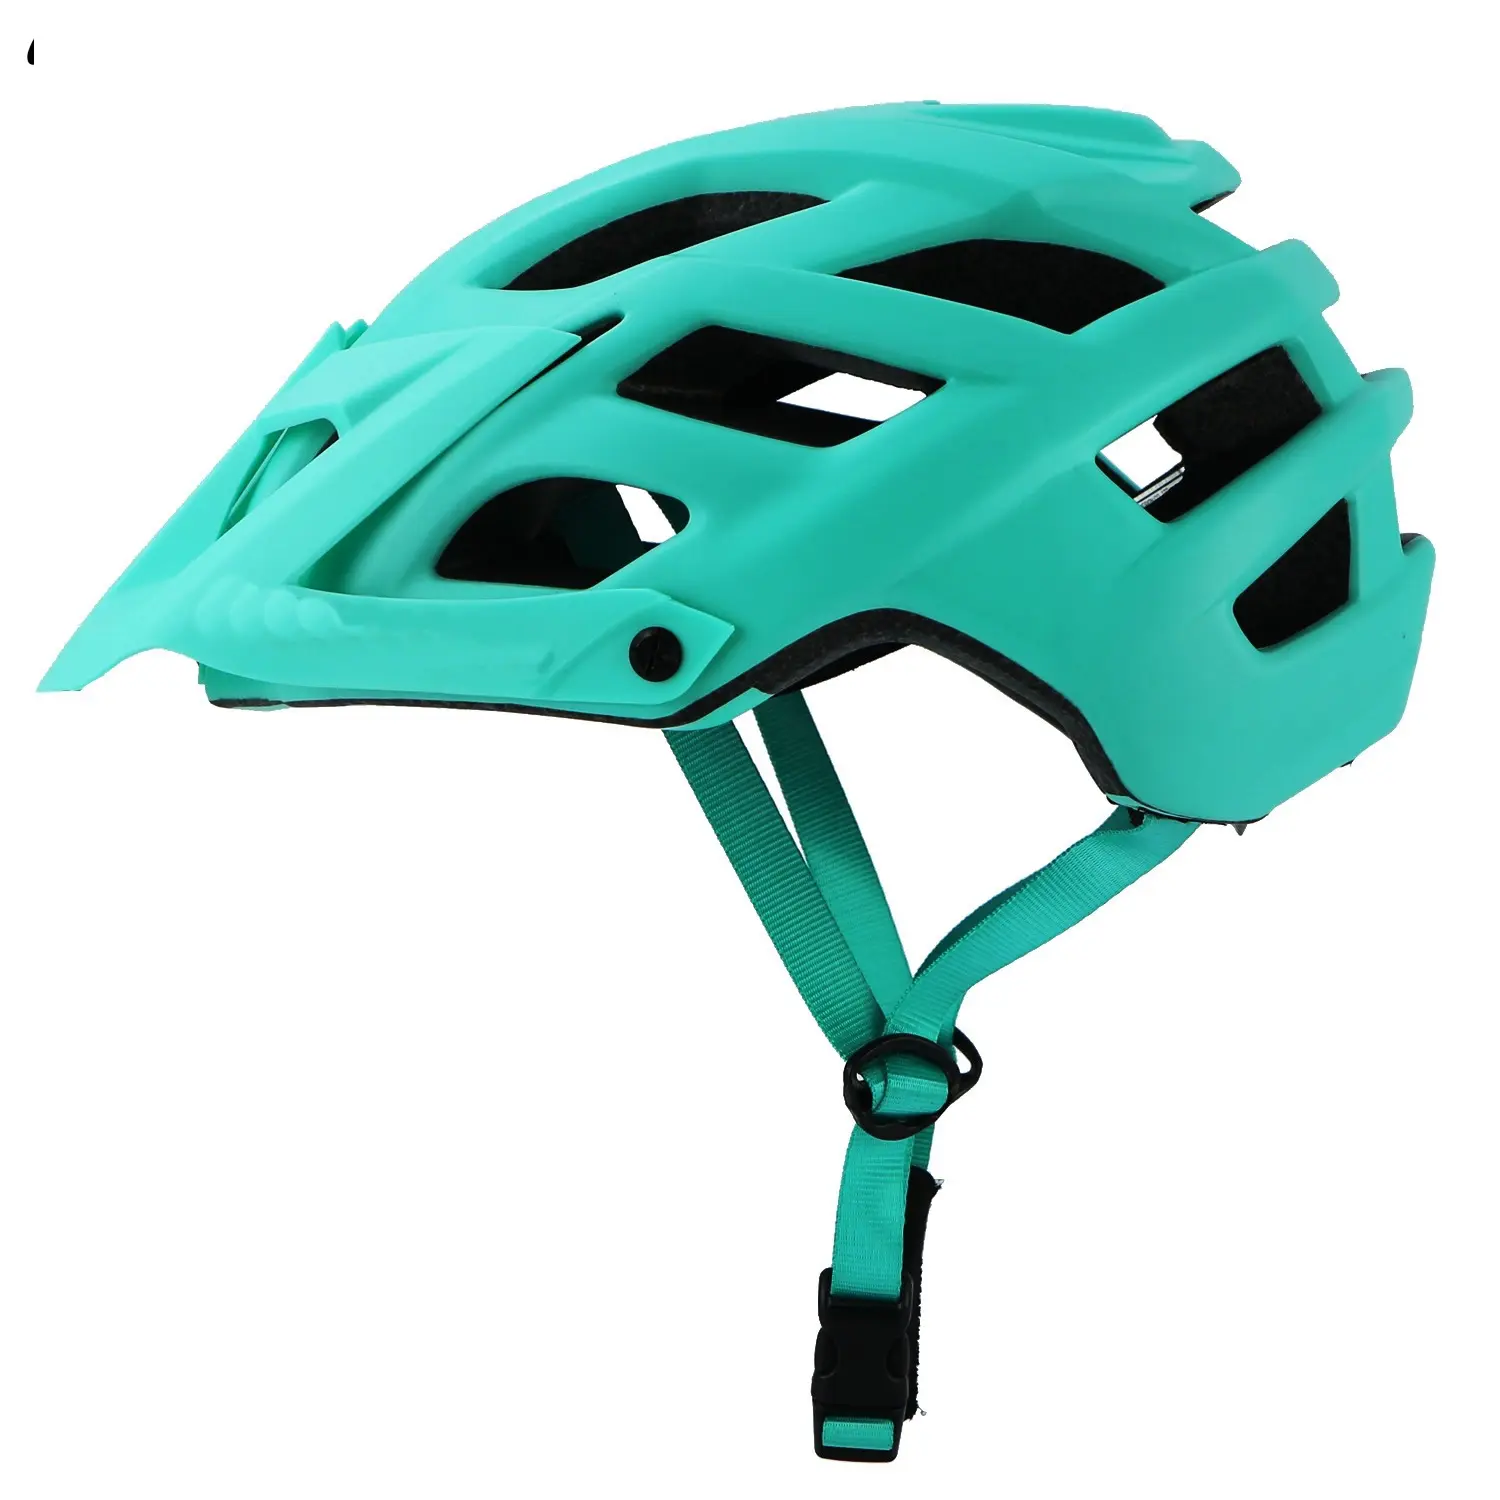 OEM/ODM велосипедный шлем от производителя, Лидер продаж, велосипедный защитный шлем с хорошей вентиляцией